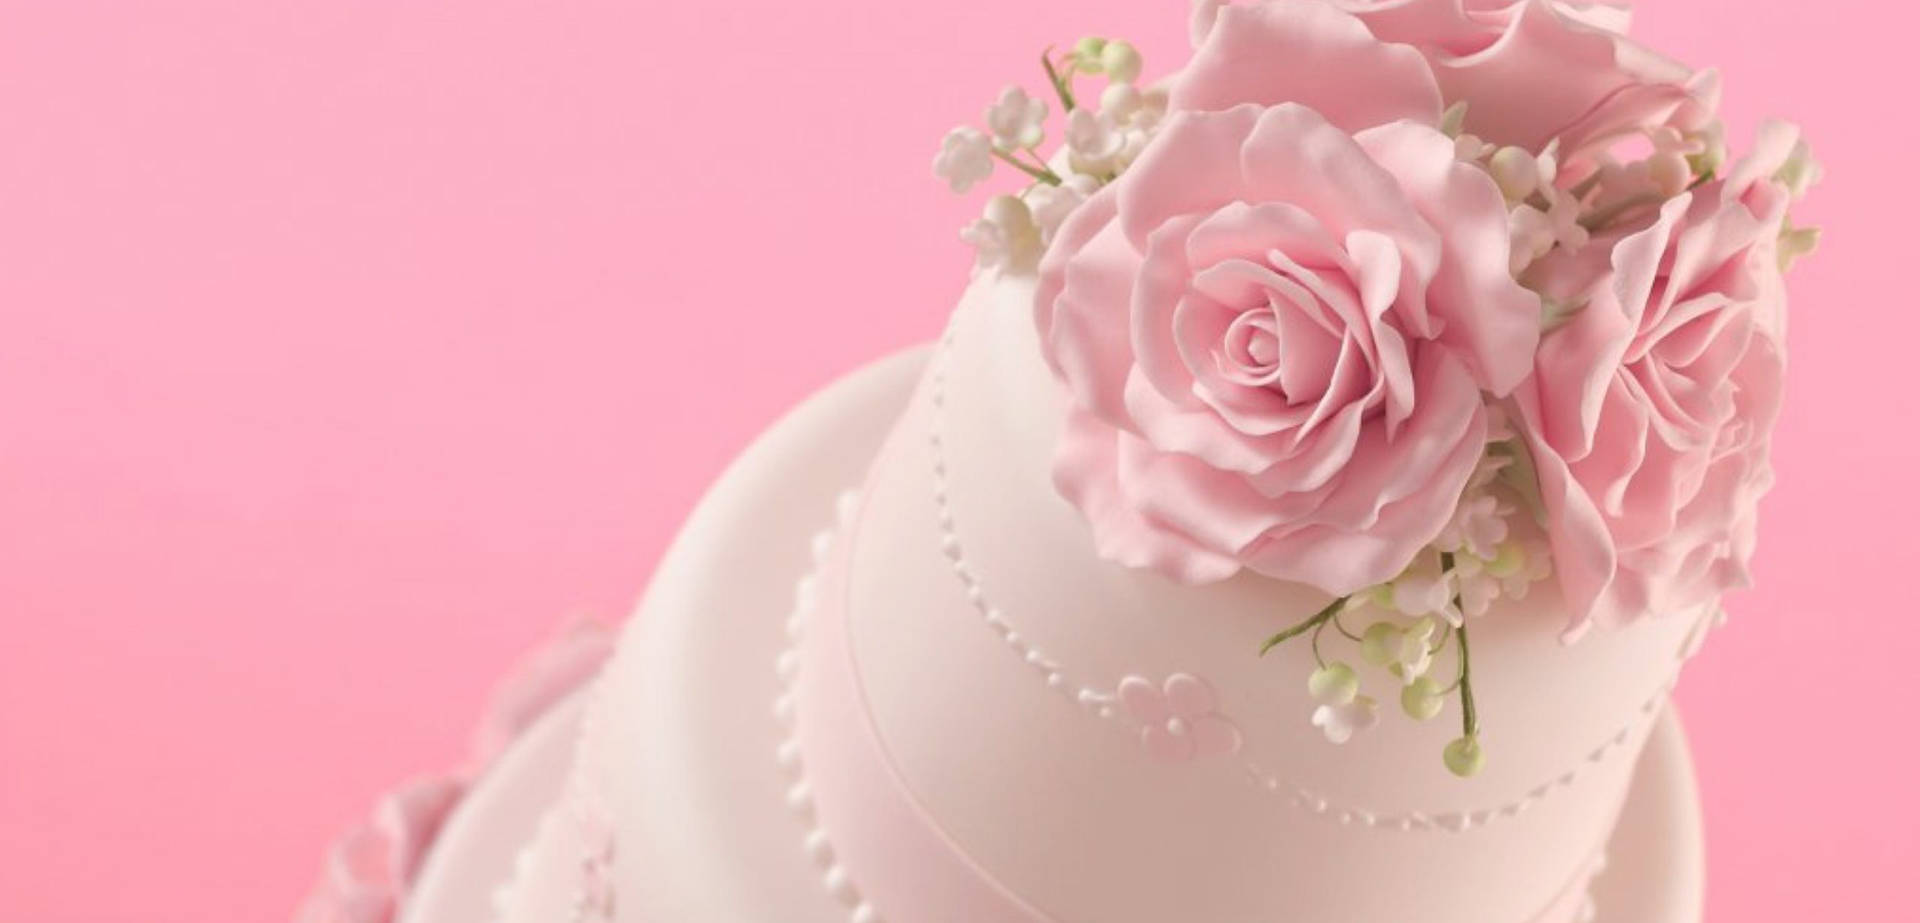 Real Pink Roses White Wedding Cake Wallpaper